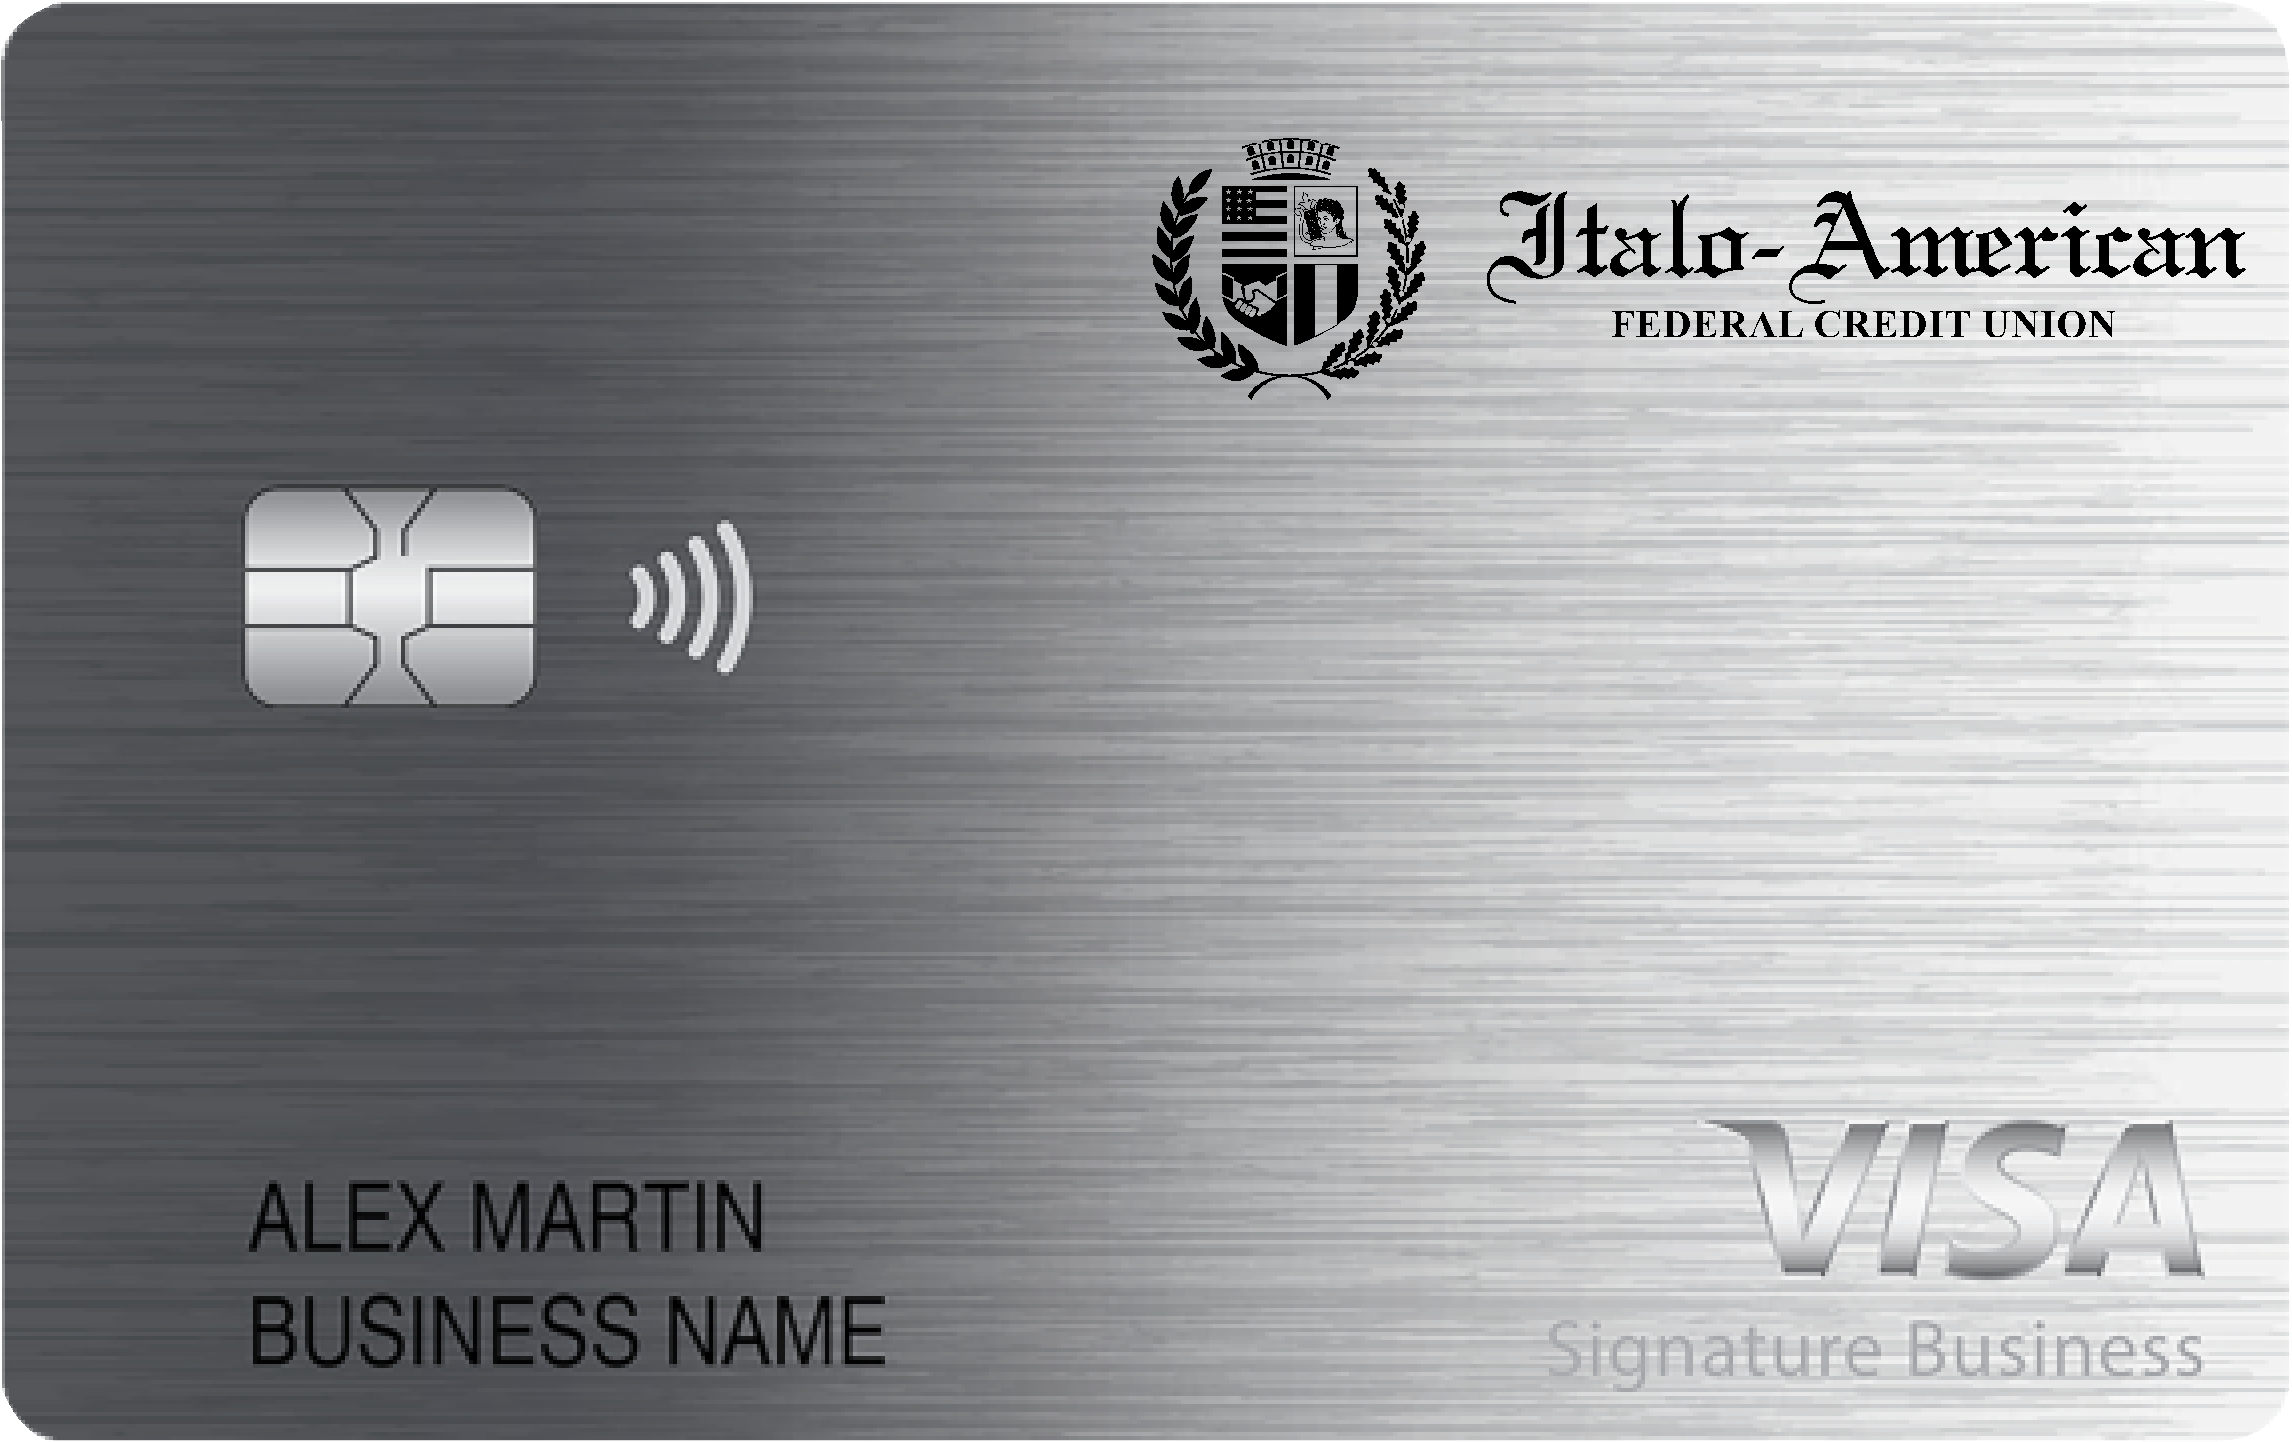 Italo-American FCU Smart Business Rewards Card